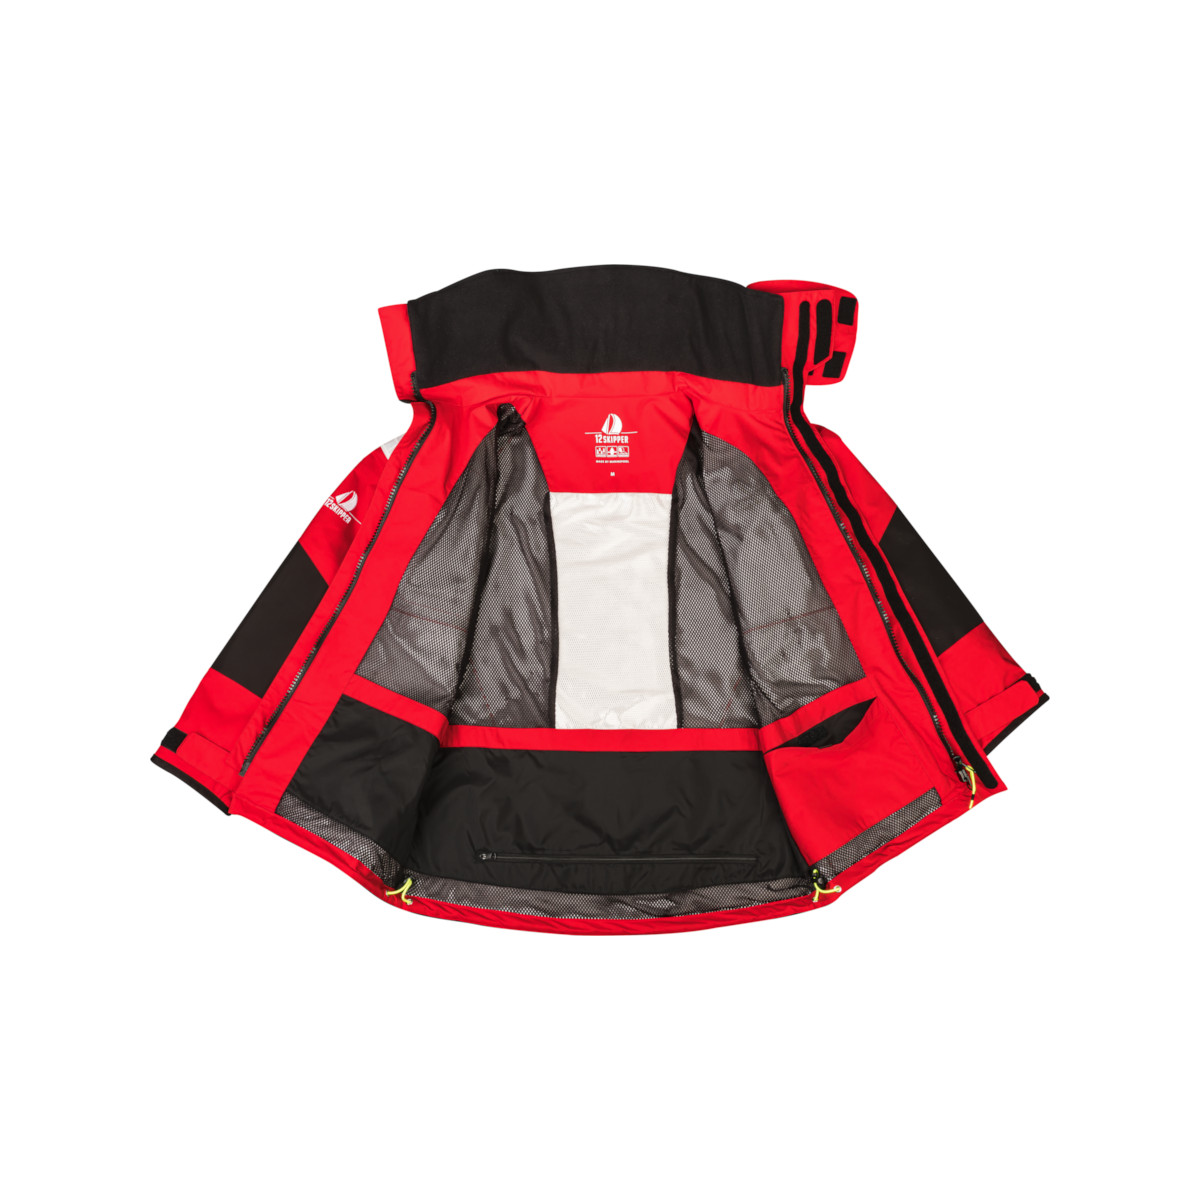 12skipper Magellan veste de quart hauturière, unisexe - rouge, taille M